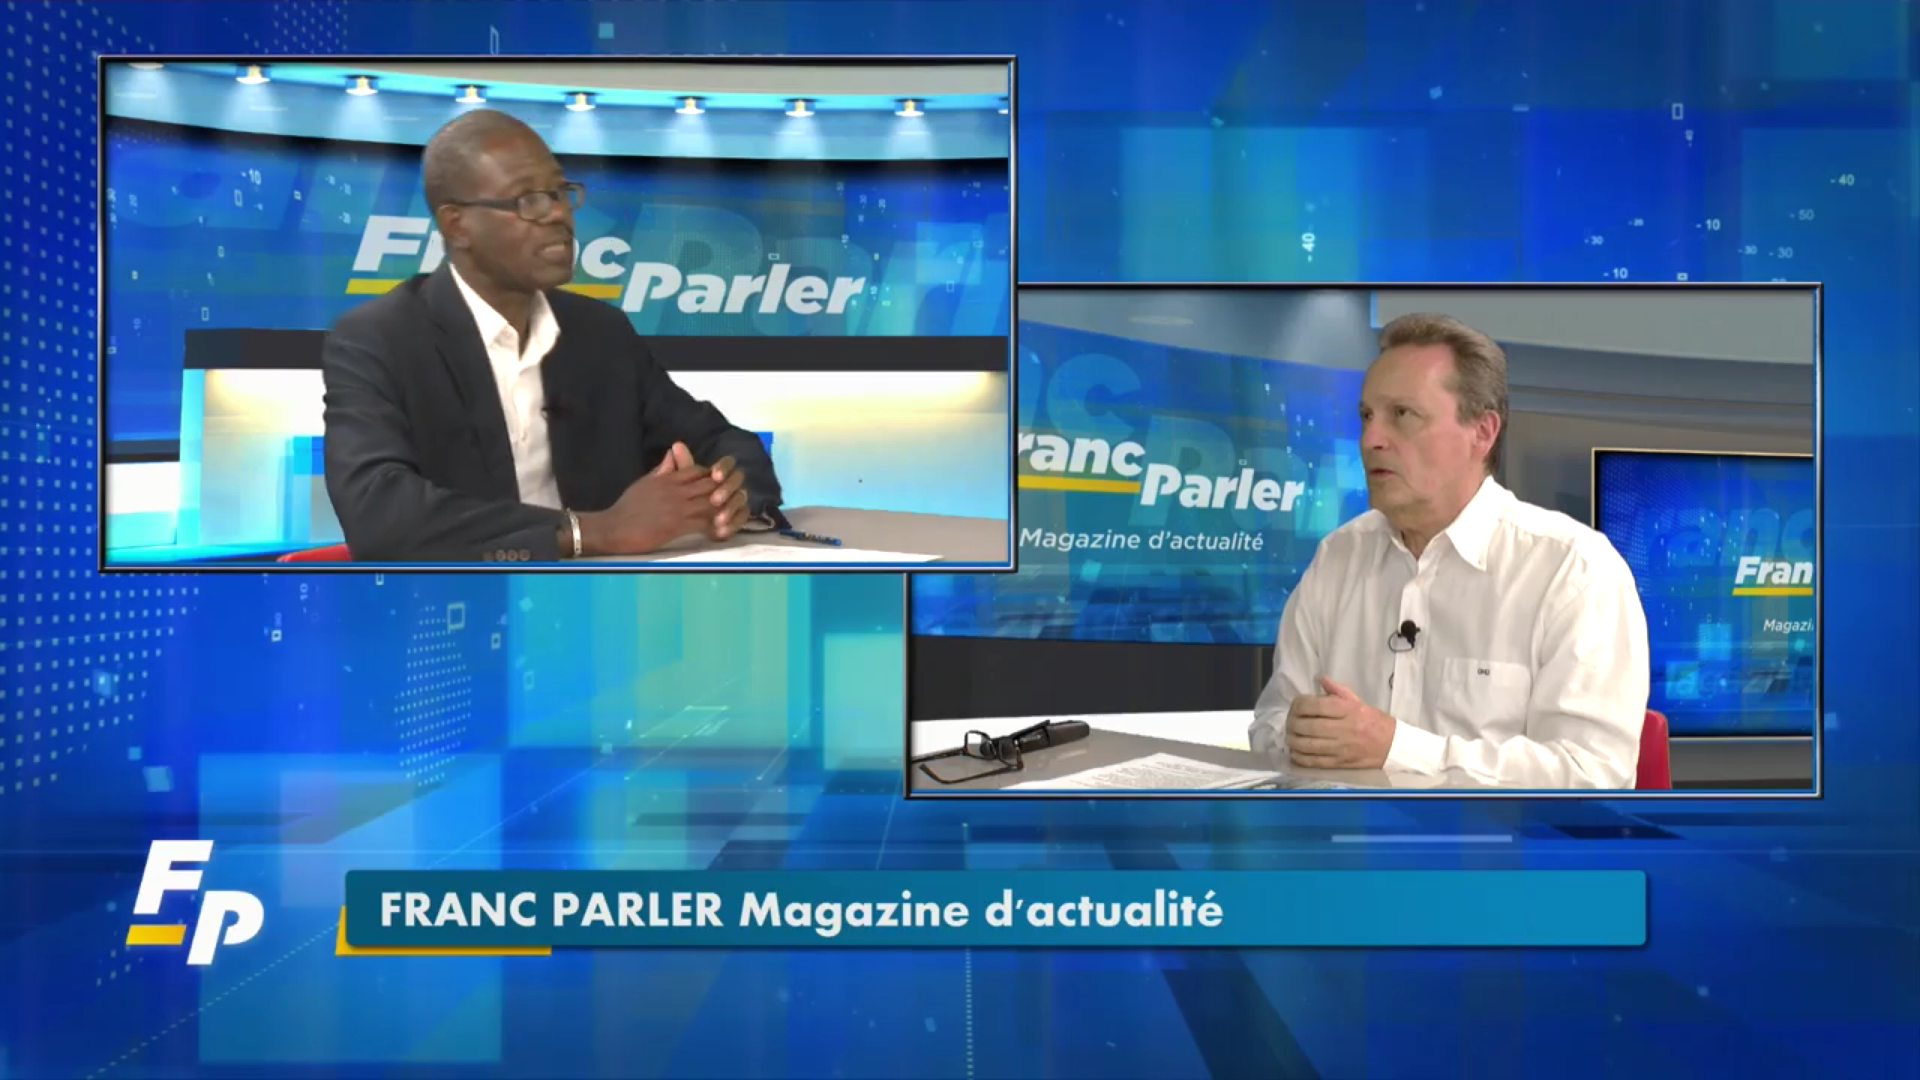 [Vidéo] Onews Guadeloupe. Bruno BLANDIN Président de l’UDE-MEDEF invité de Franc Parler (Eclair Tv)